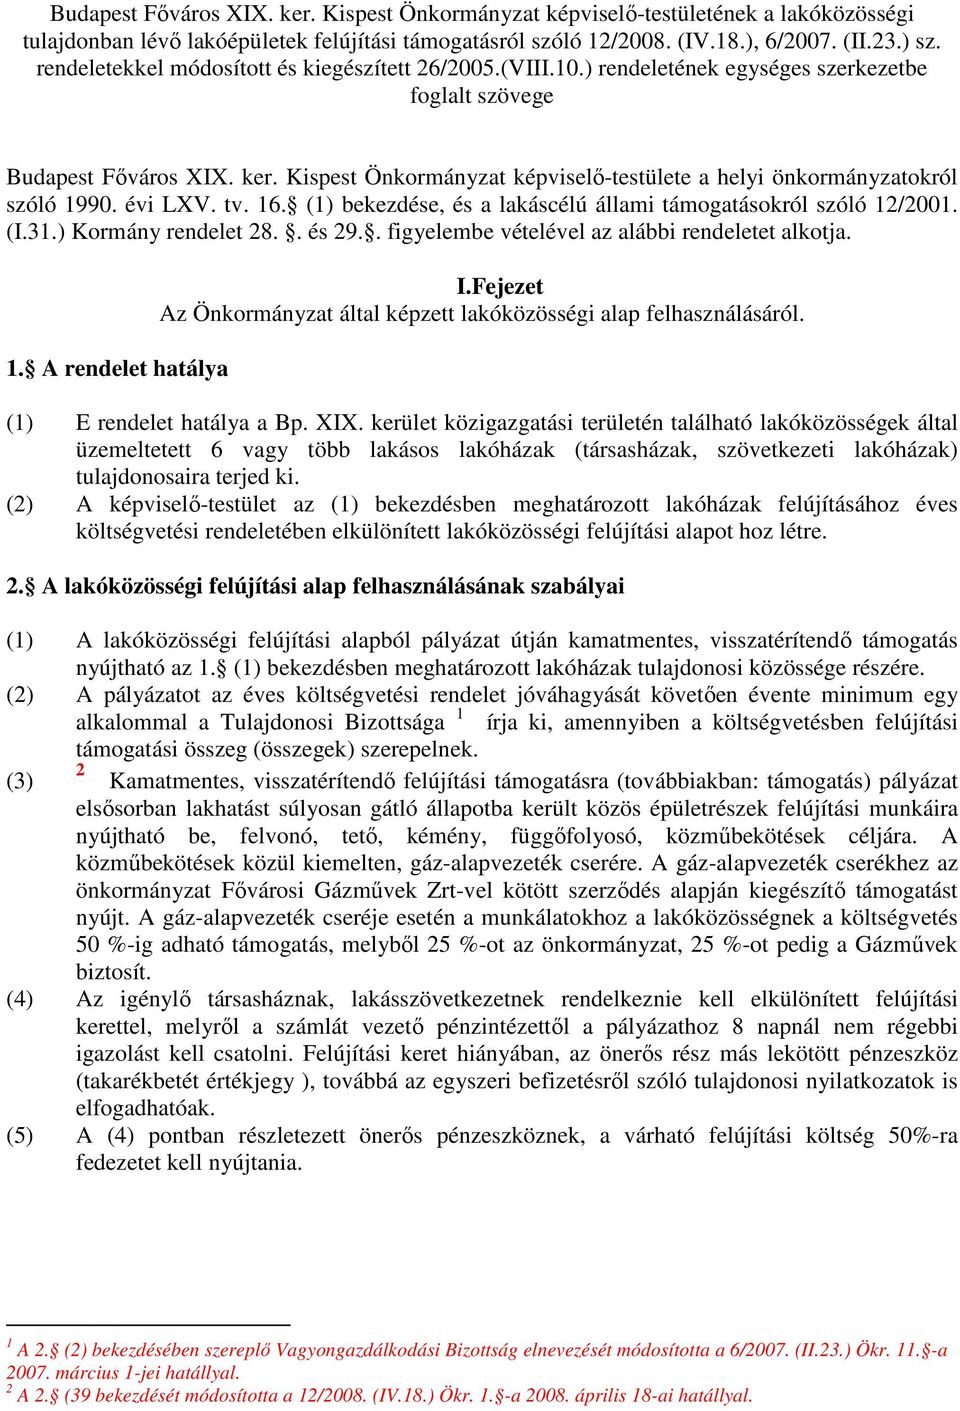 Kispest Önkormányzat képviselı-testülete a helyi önkormányzatokról szóló 1990. évi LXV. tv. 16. (1) bekezdése, és a lakáscélú állami támogatásokról szóló 12/2001. (I.31.) Kormány rendelet 28.. és 29.